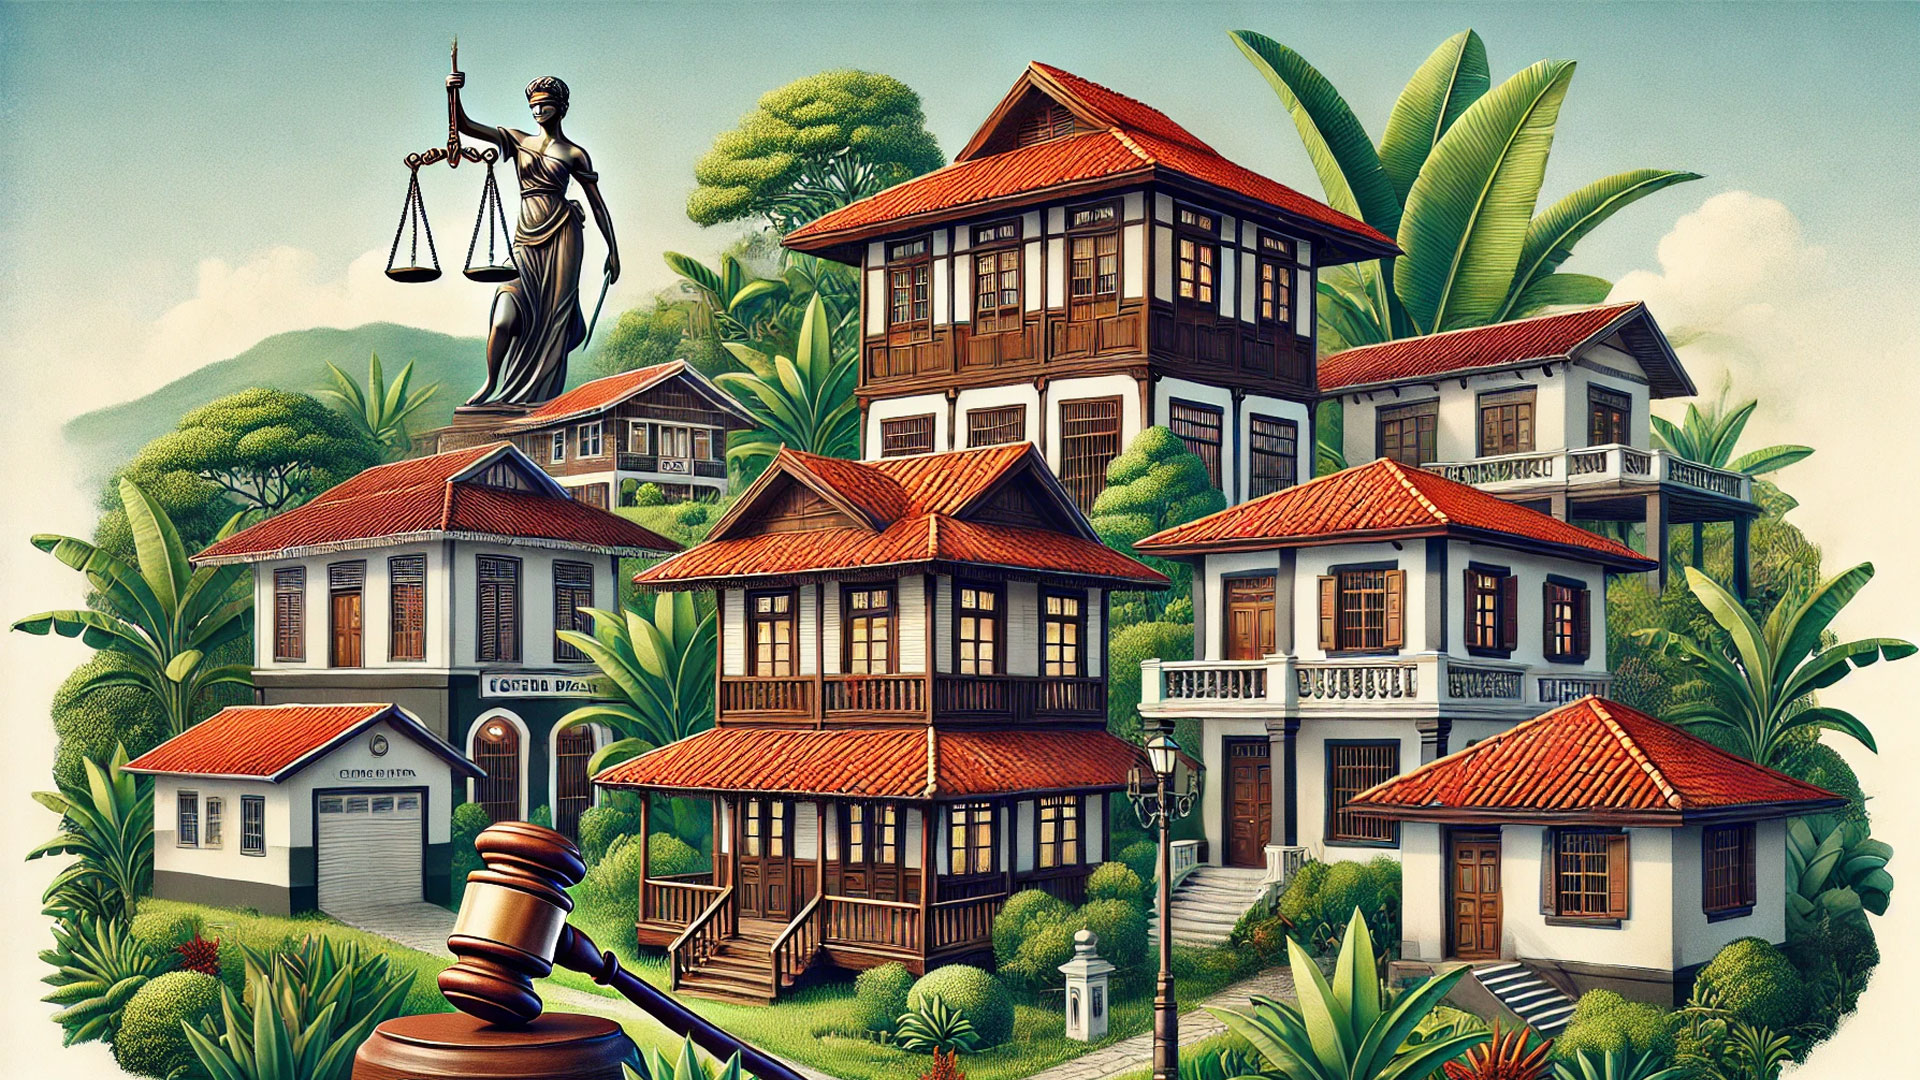 ley-general-de-arrendamientos-urbanos-y-suburbanos-de-costa-rica